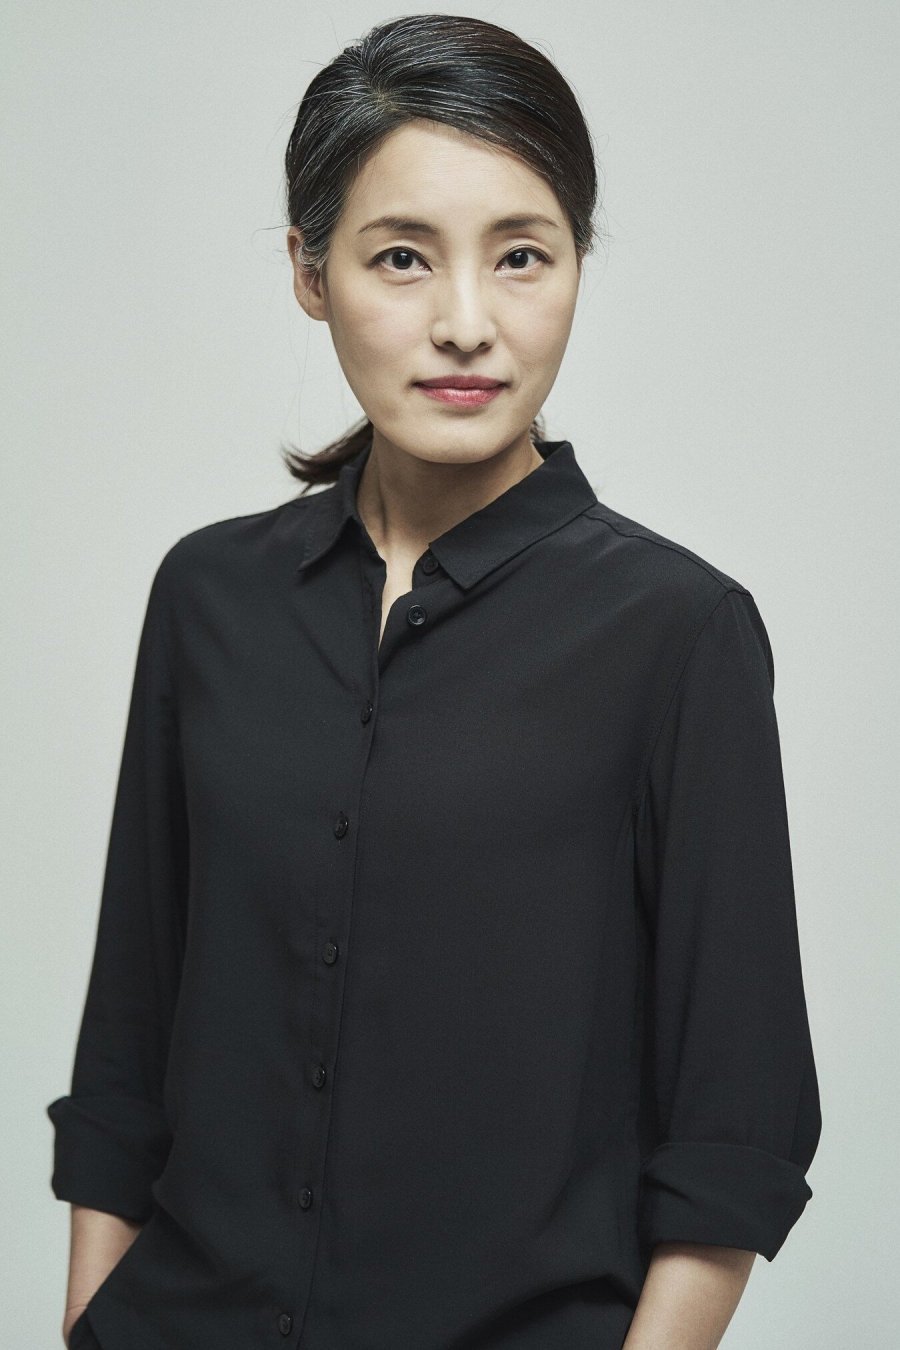 Кан Джи Ын / Kang Ji Eun